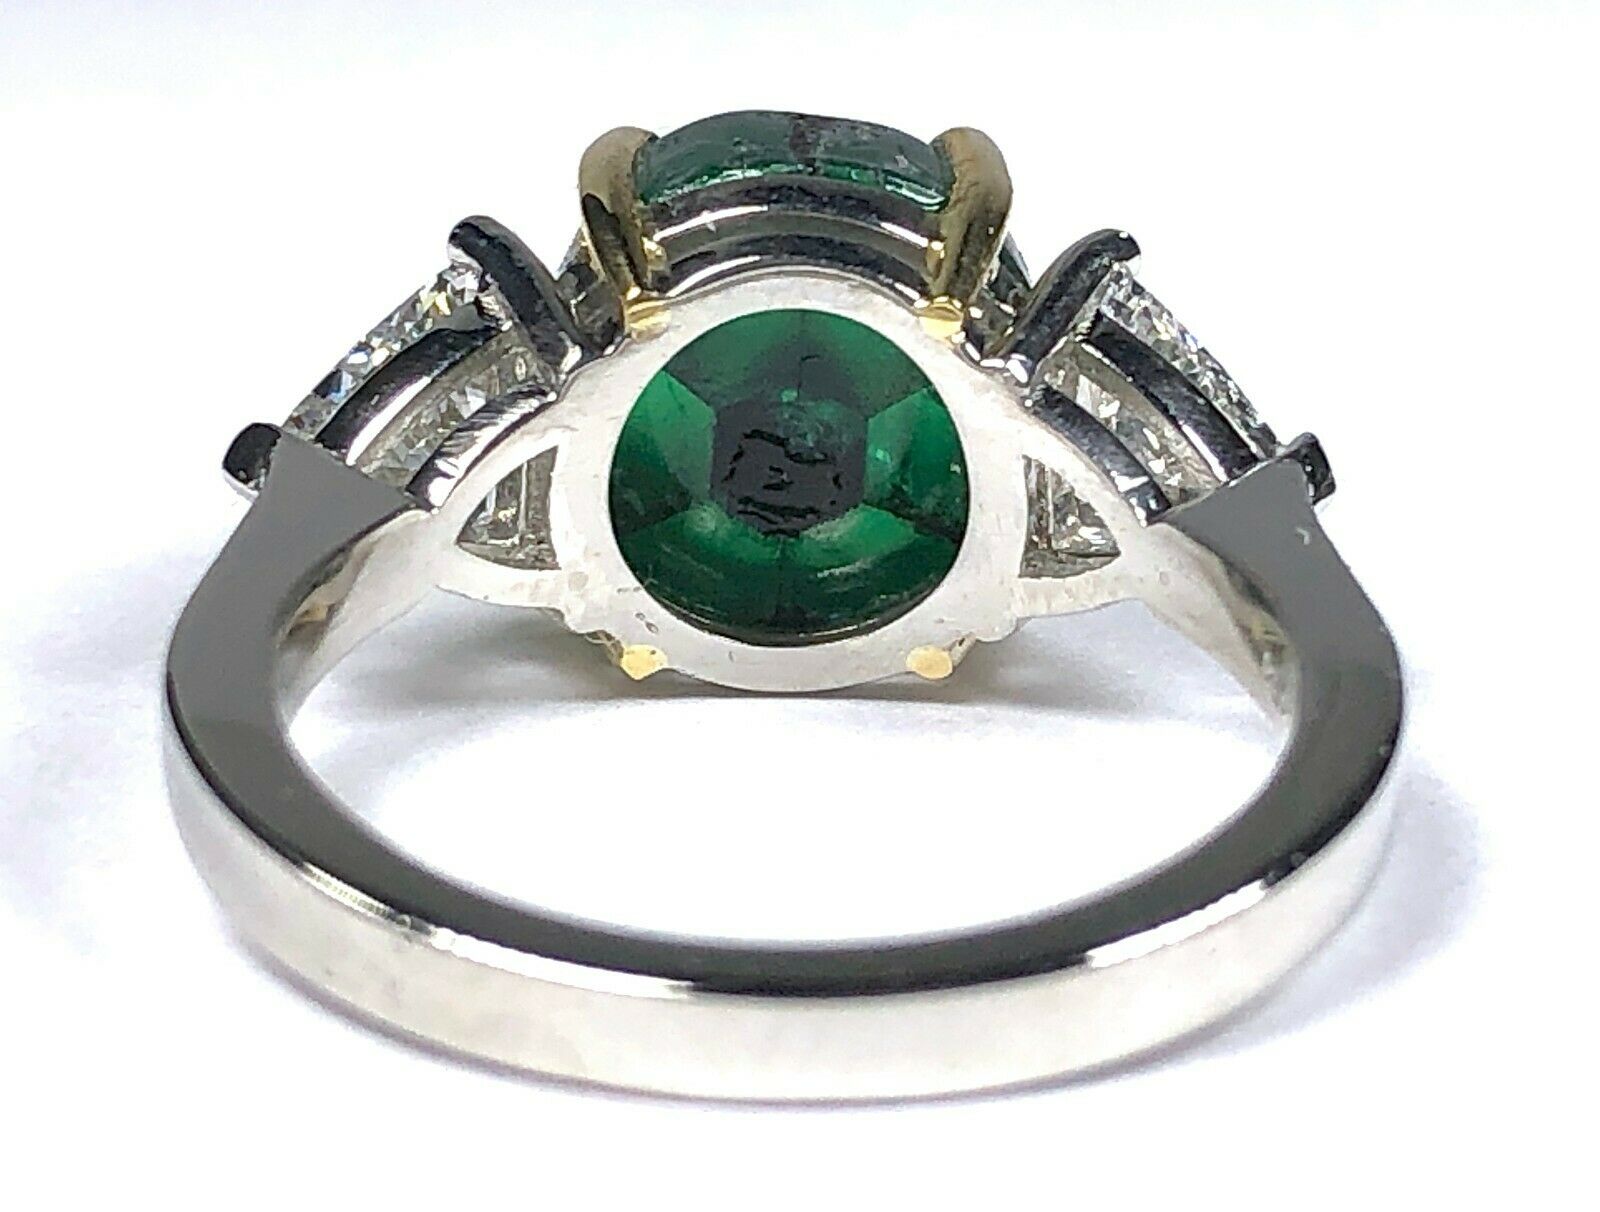 GRS 5.42 ct. Colombian Trapiche Emerald & Trillion Cut Diamond Ring in Platinum & 18K Gold